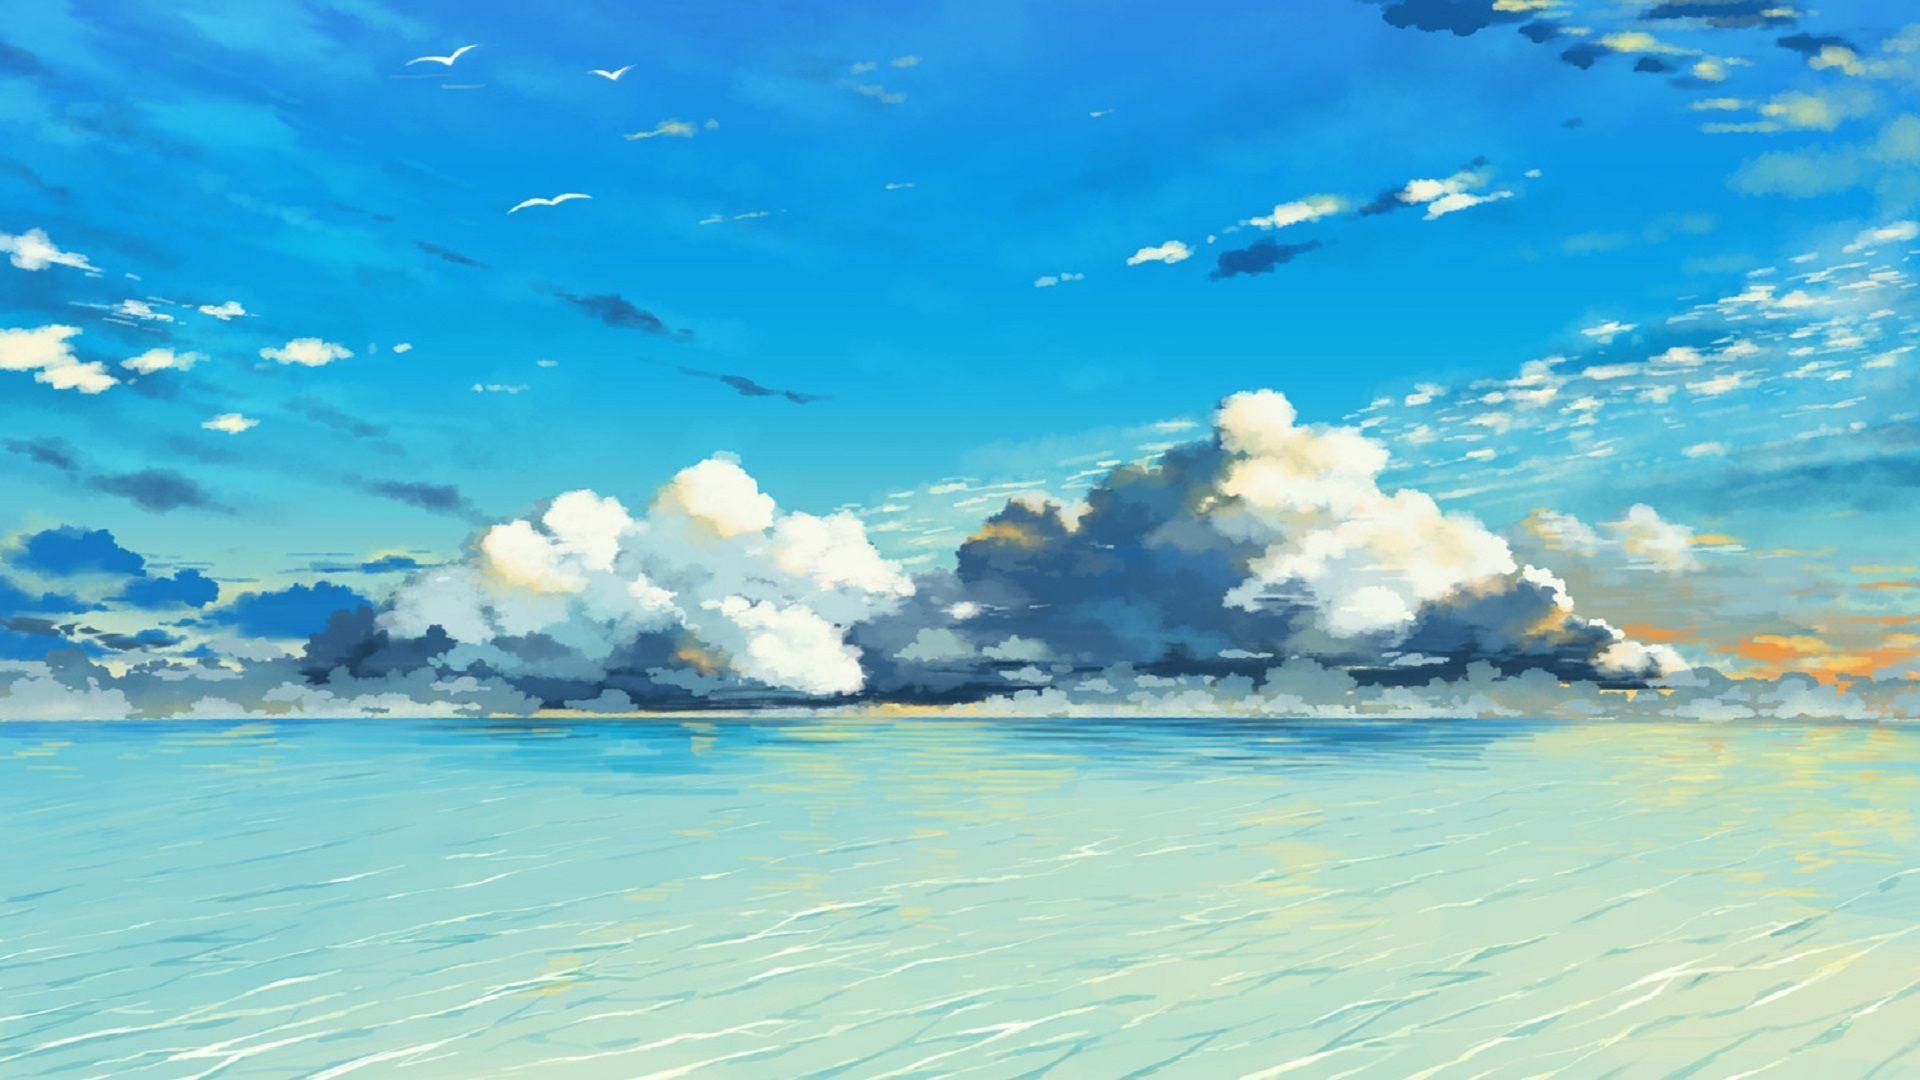 Vẻ đẹp của nhân vật anime sẽ gợi cảm hứng cho trái tim của bạn. Ảnh nền anime với chủ đề biển cả sẽ khiến bạn cảm thấy bình yên và thư giãn hơn. Hãy đến với bộ sưu tập ảnh nền anime biển đầy màu sắc để tìm cho mình một tác phẩm ưng ý nhất.